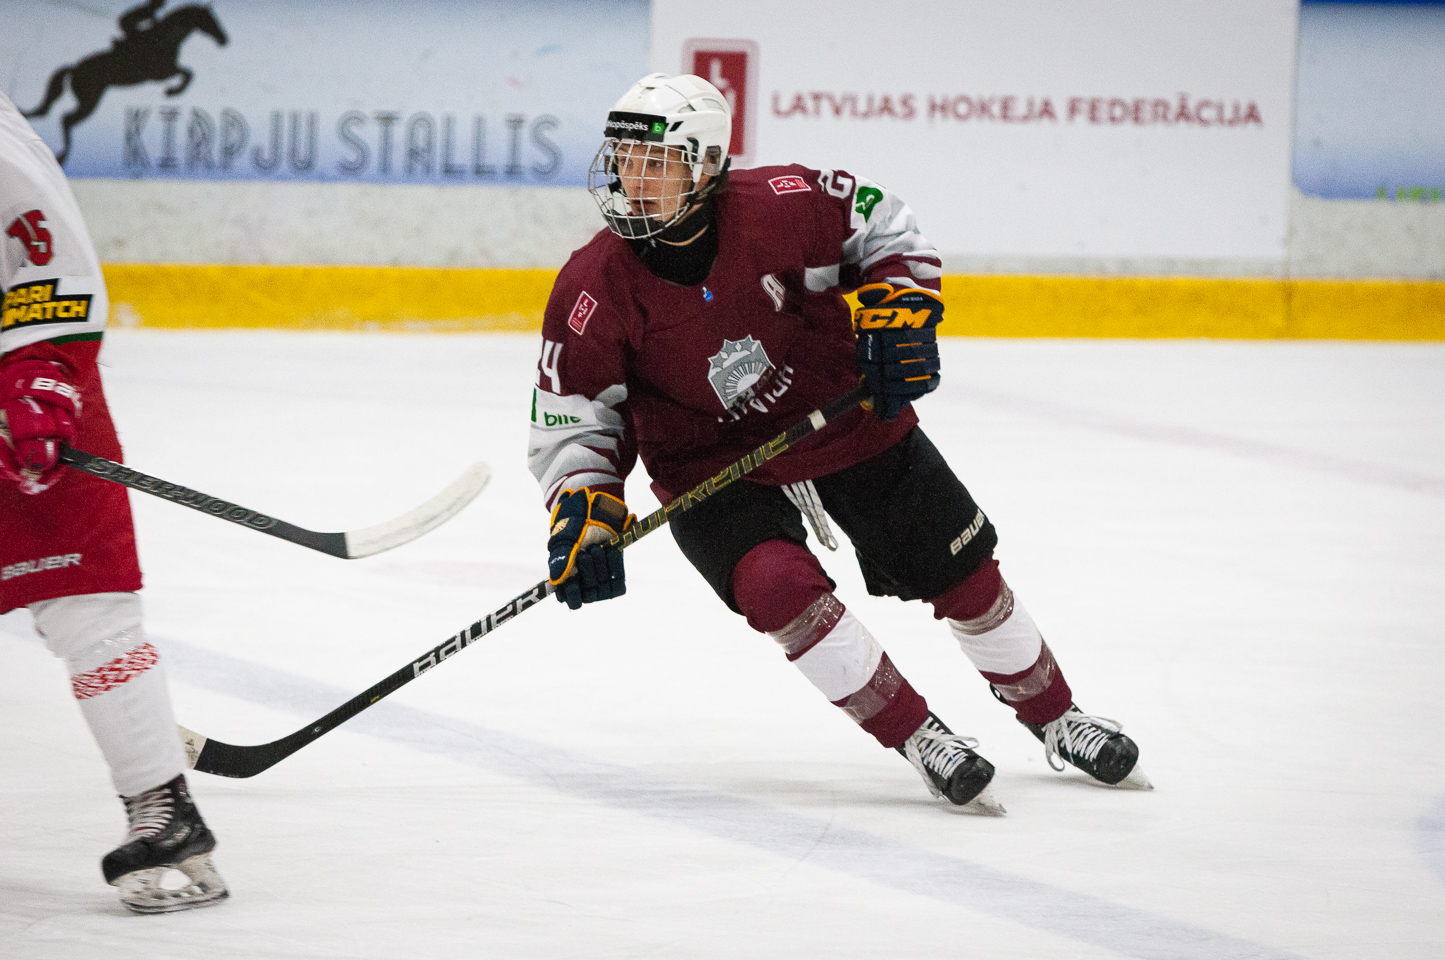 Trīs nāciju pārbaudes turnīra spēle starp Latvijas U-18 un Baltkrievijas U-18 valstsvienībā Jelgavas ledus hallē 2019. gada 14. decembrī. | Foto: Ruslans Antropovs / rusantro.com